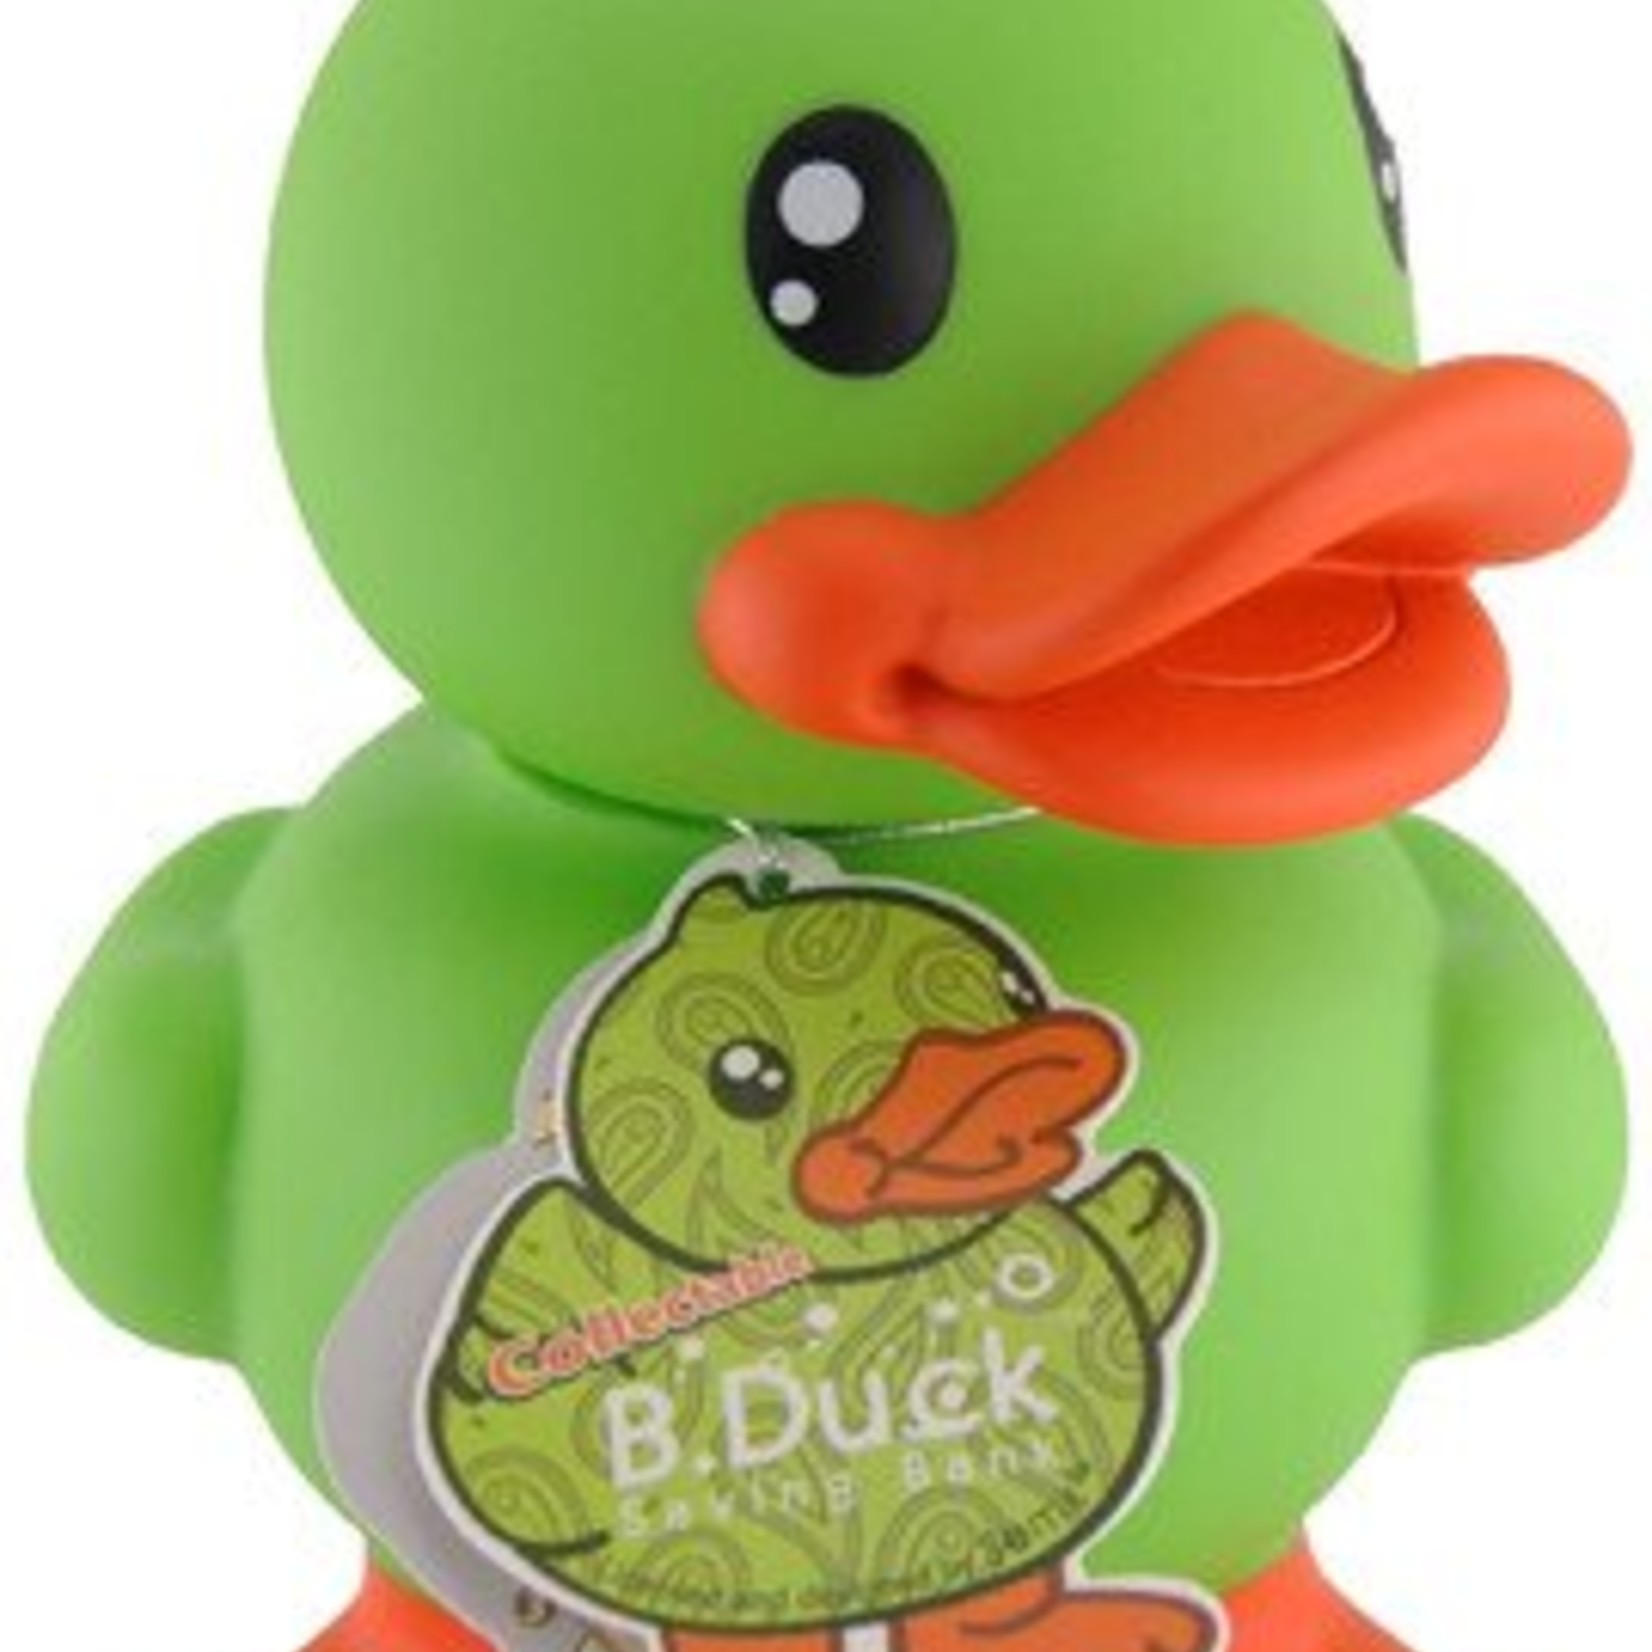 Bduck spaarpot groen Limited Edition. Formaat 18cm.